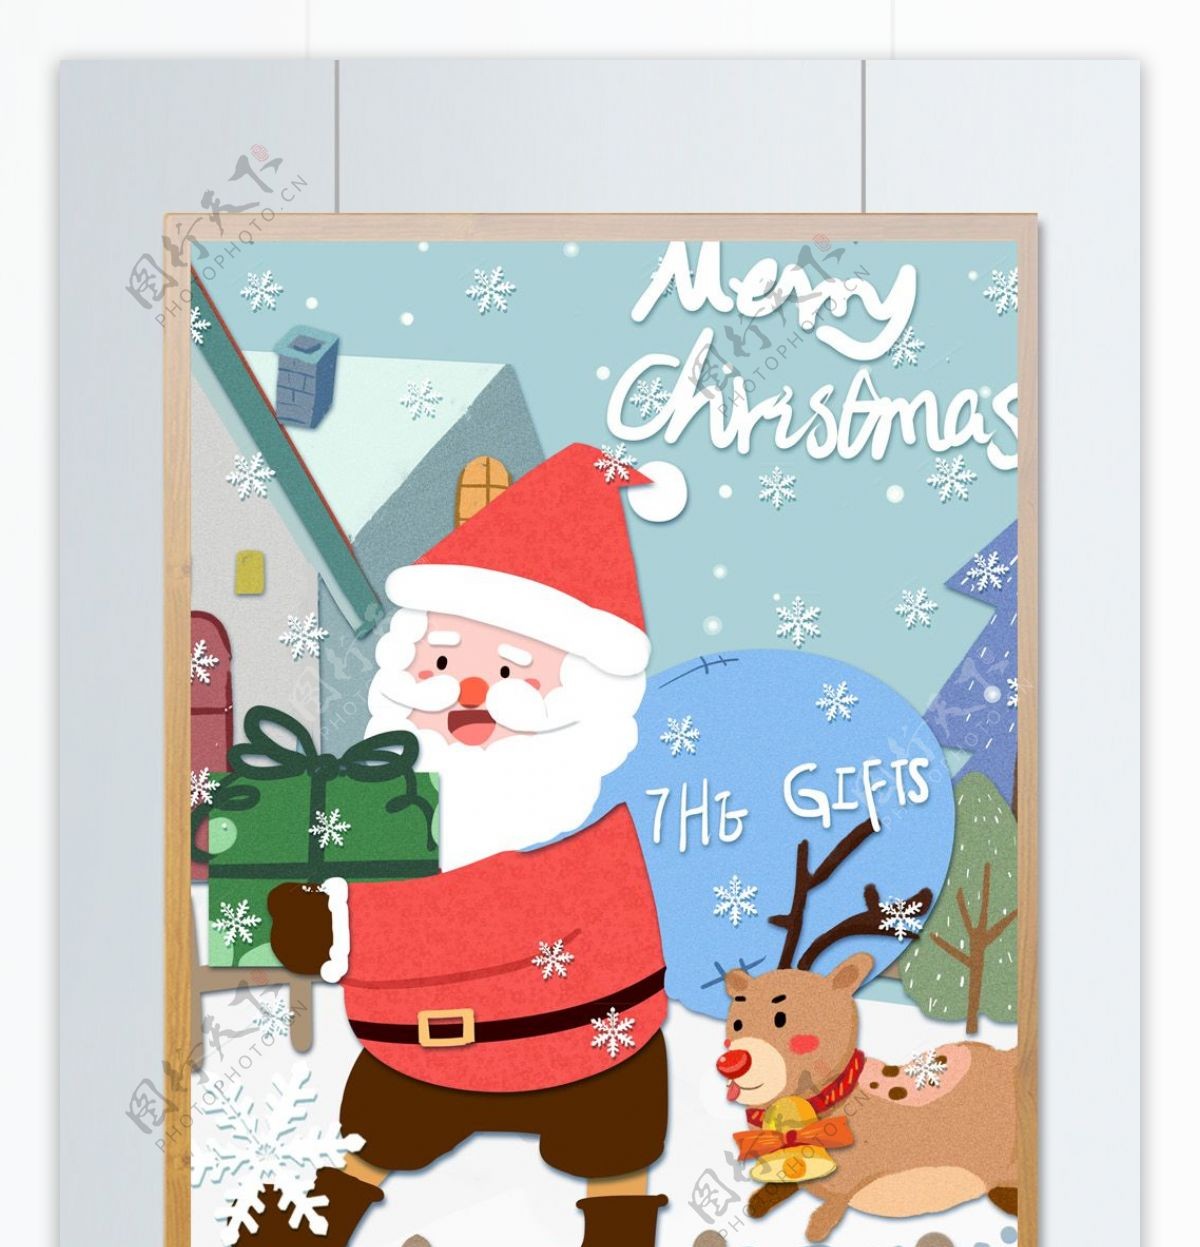 圣诞节圣诞老人与鹿可爱温暖温馨剪纸插画